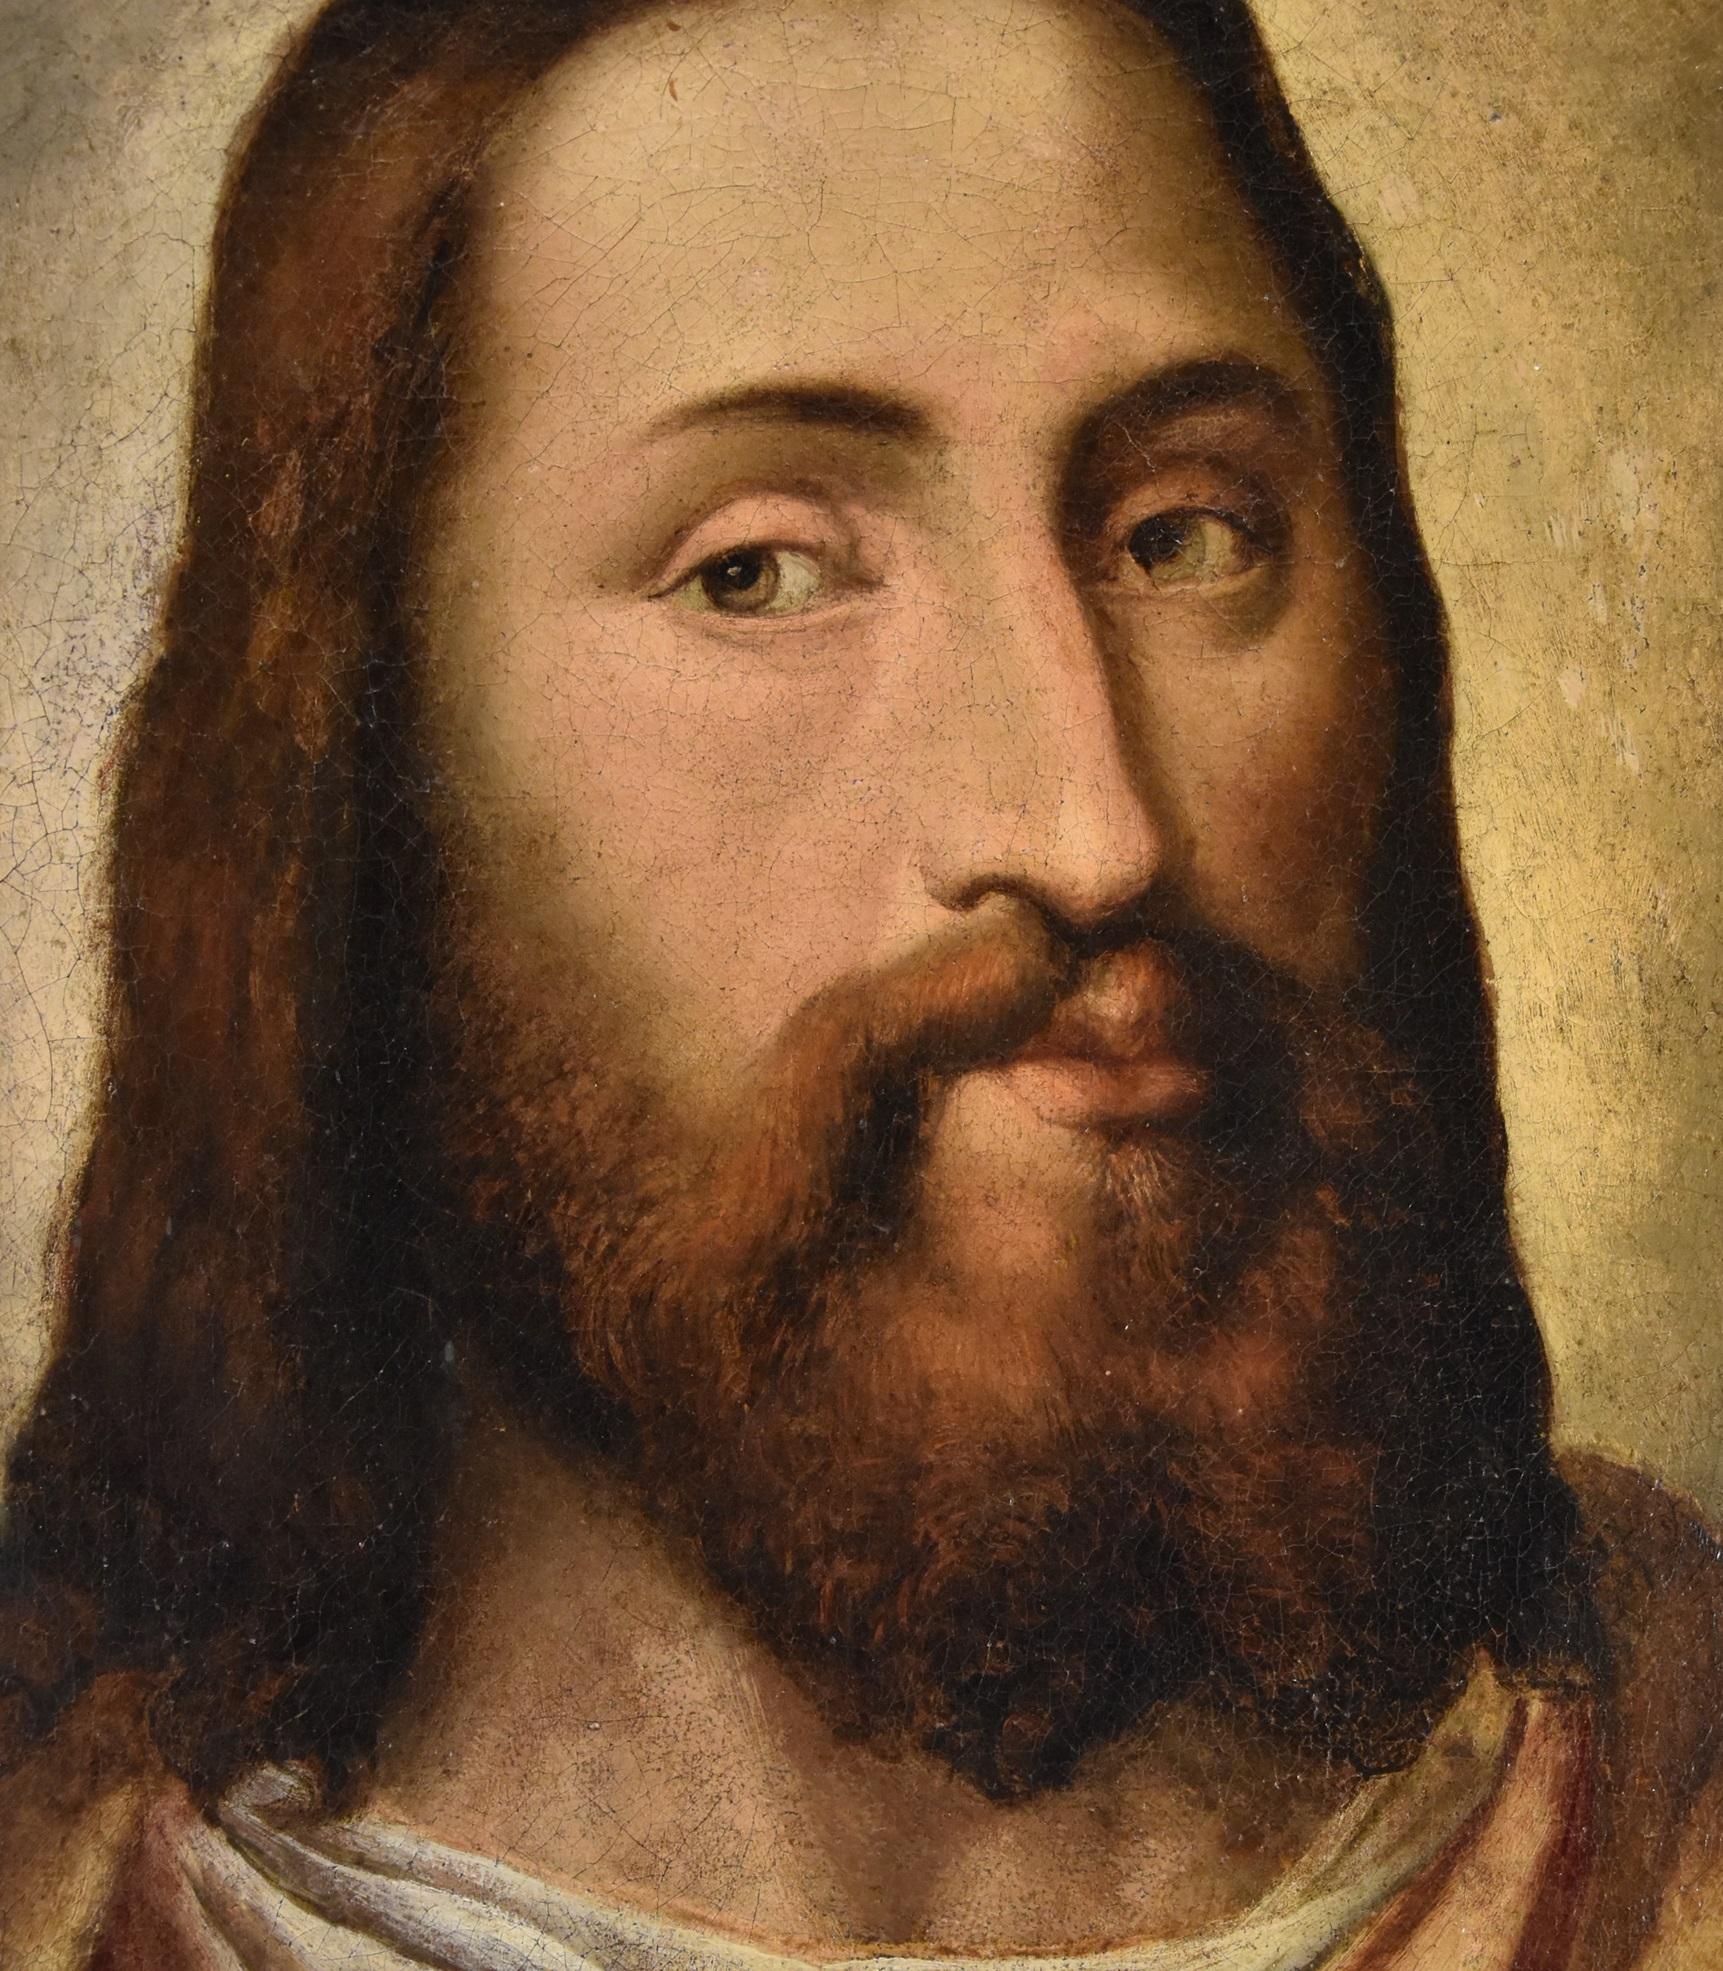 Portrait du Christ Titien 16ème siècle Huile sur toile Grand maître Venezia Italie 2